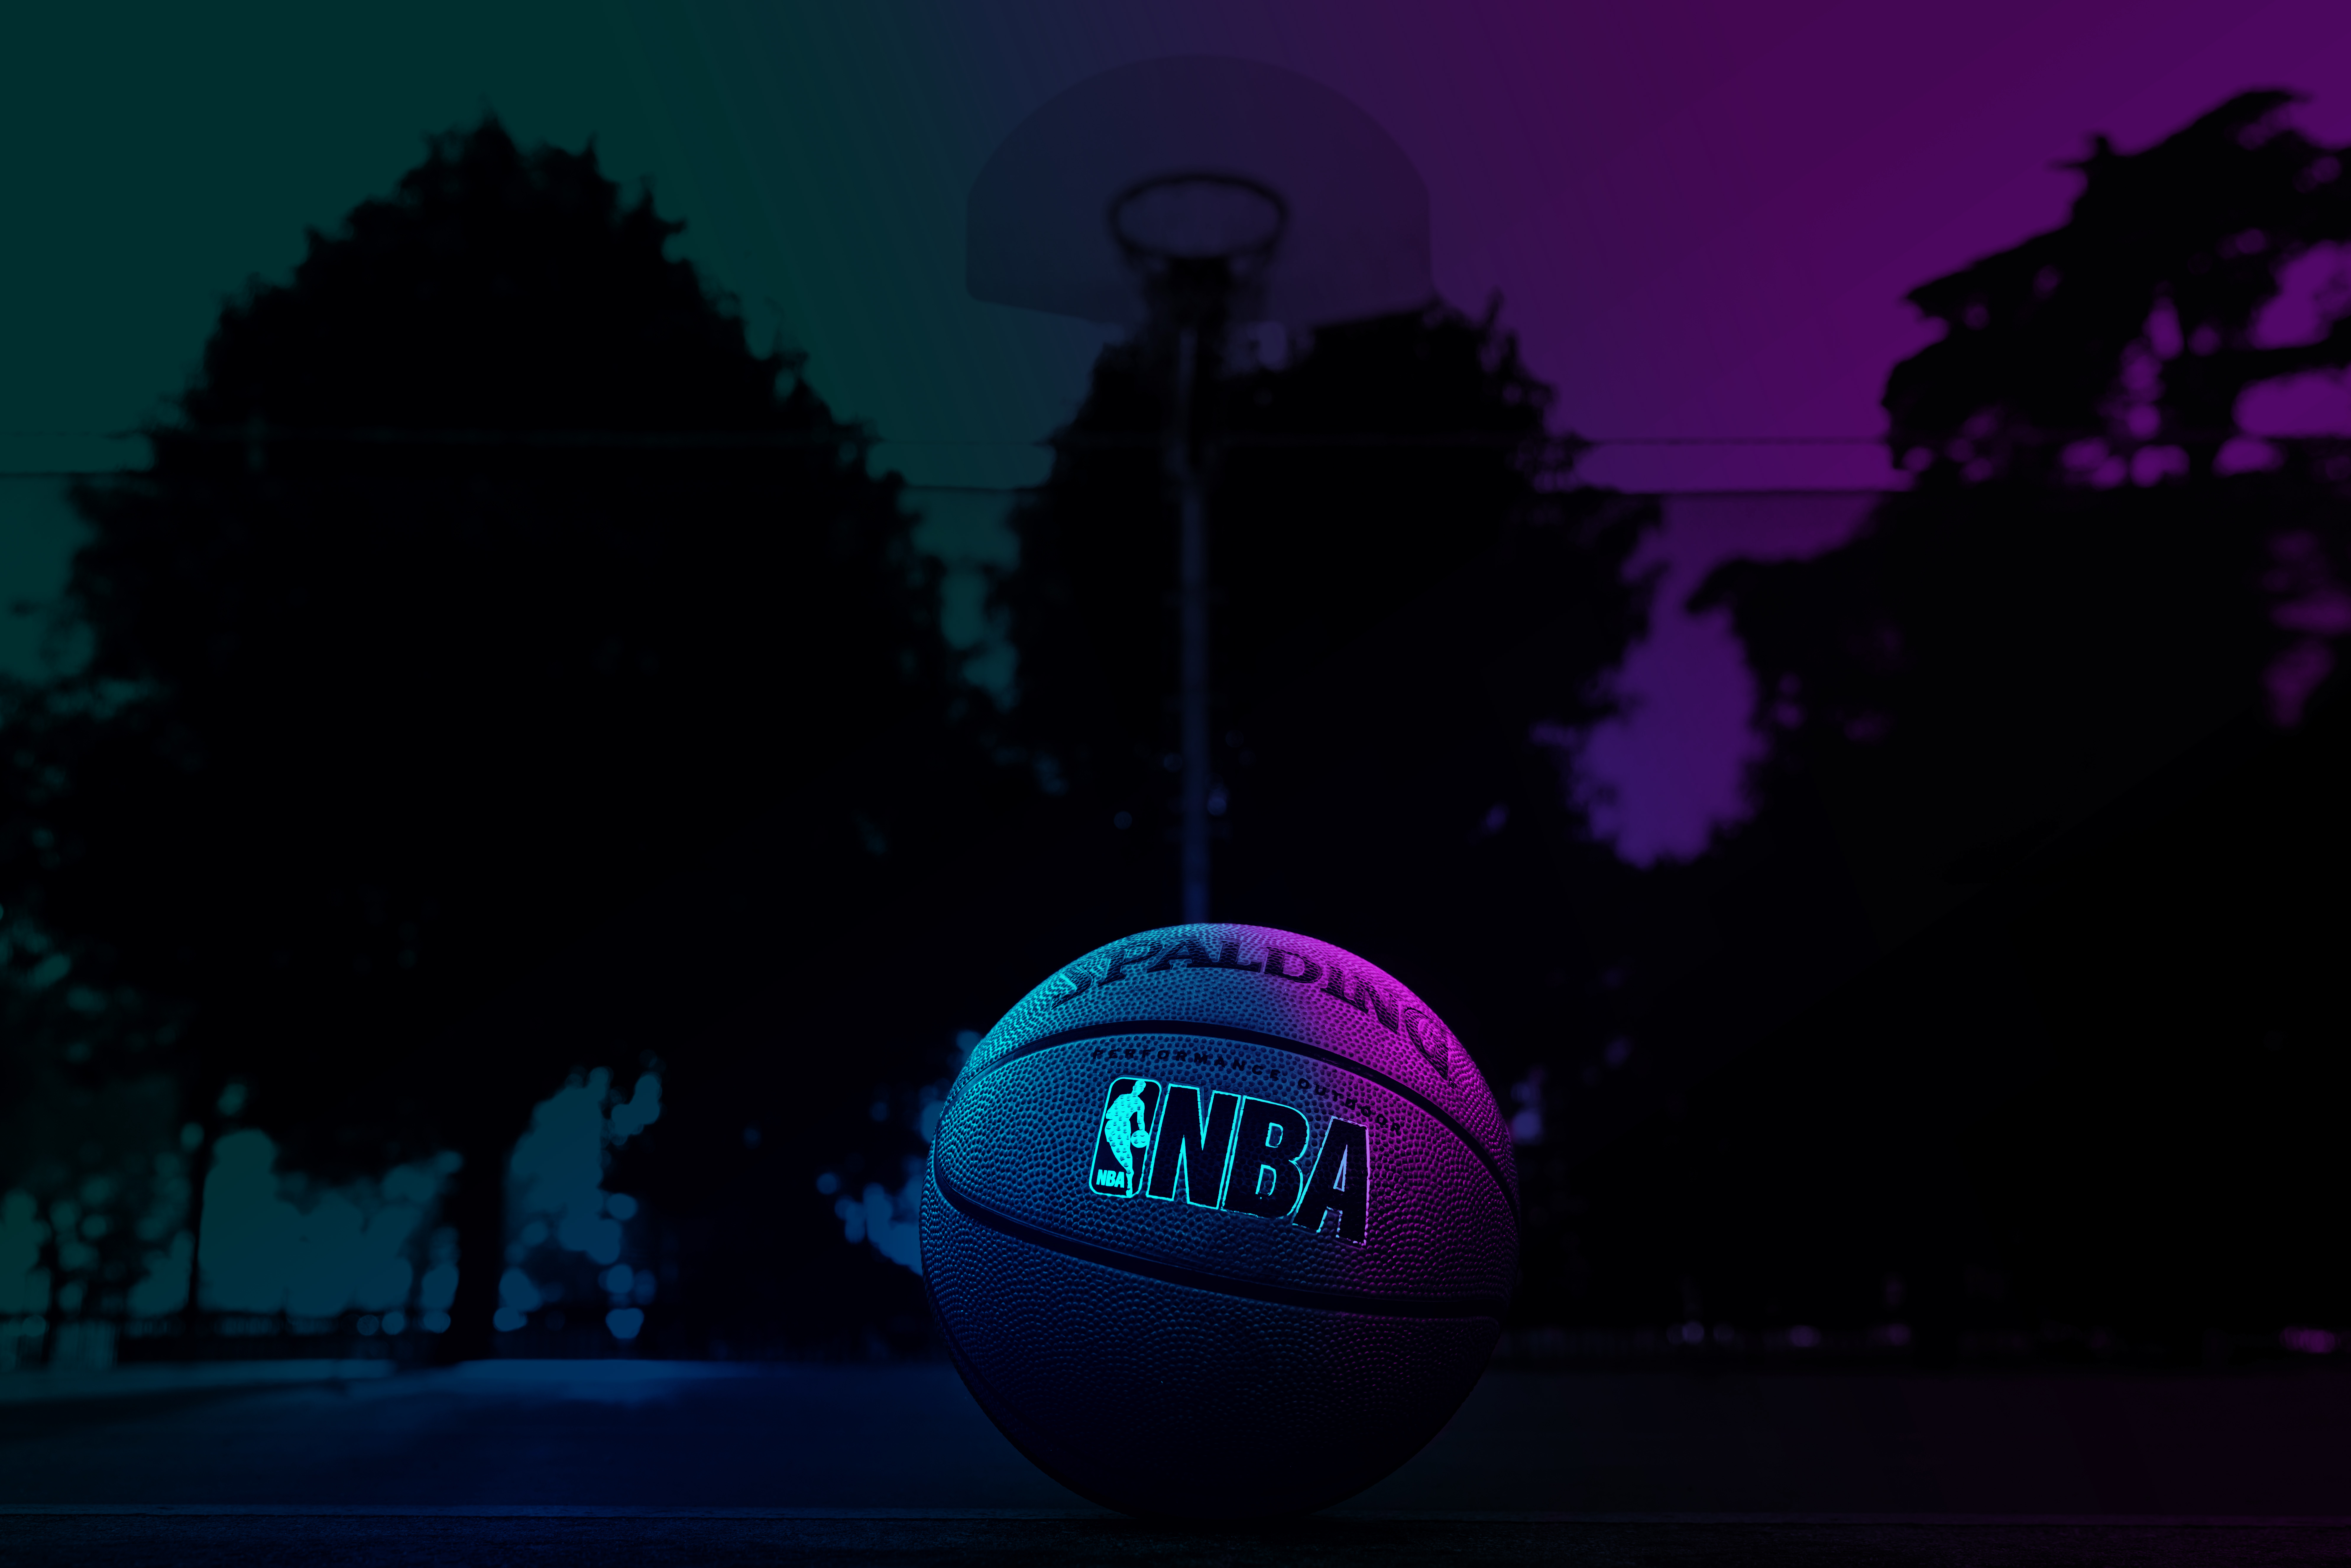 Wallpaper, NBA, basketball, sport, neon, pop art 7952x5304